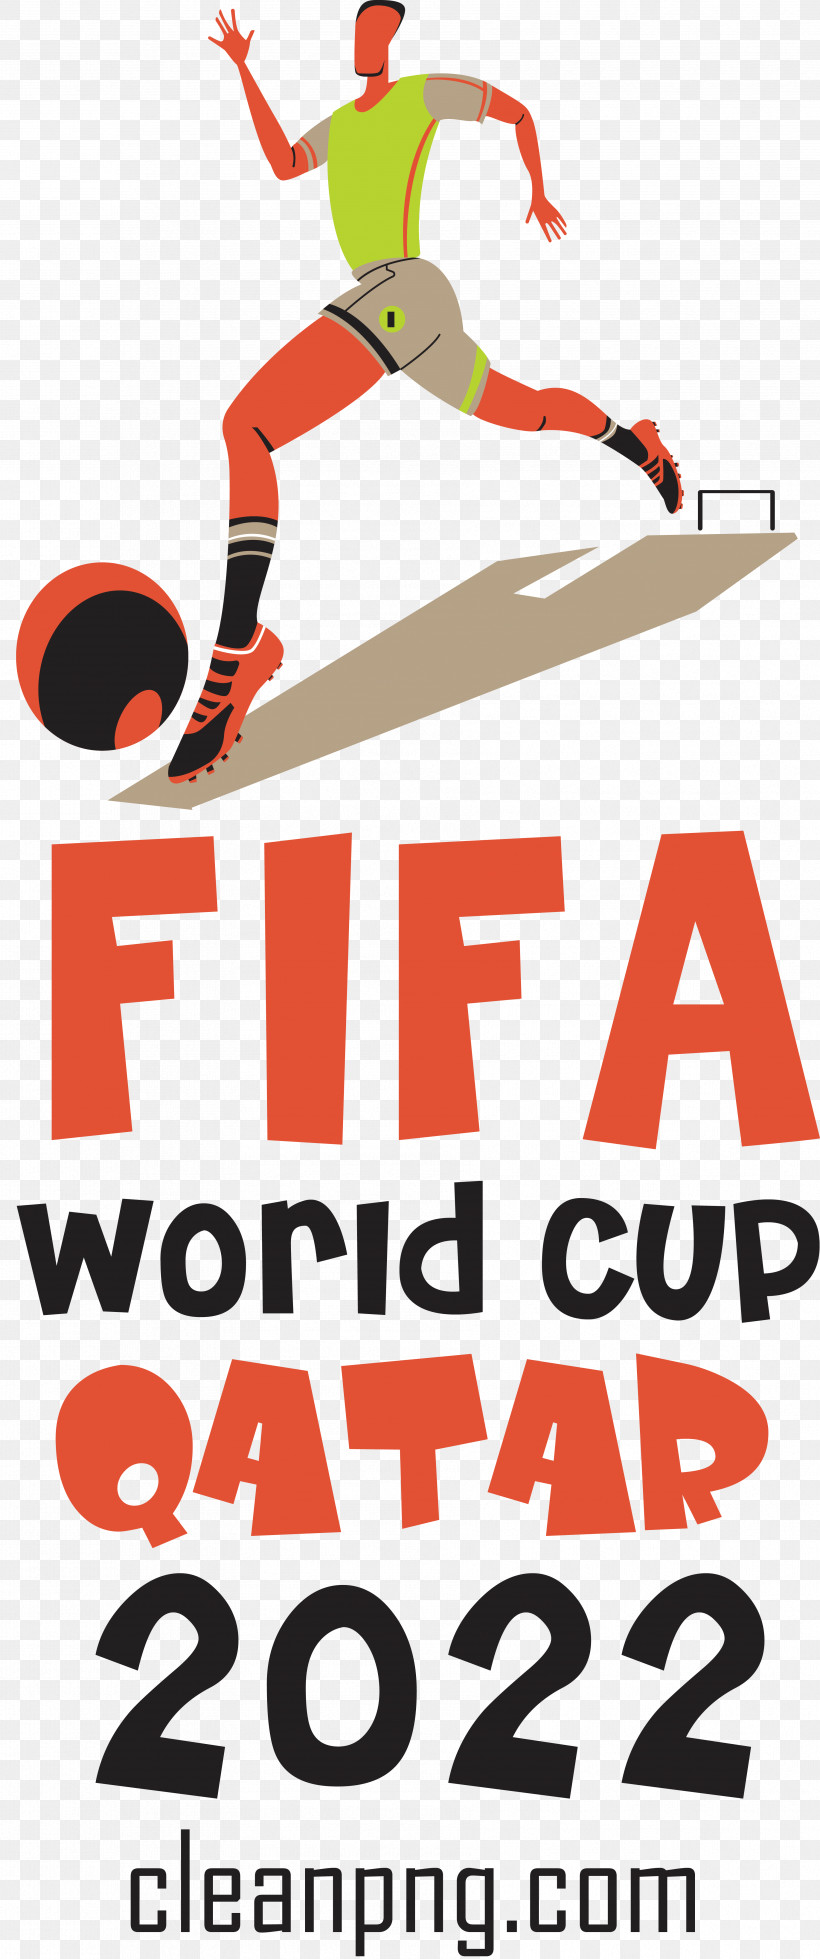 Fifa World Cup Qatar 2022 Fifa World Cup Qatar Football Soccer, PNG, 3562x8511px, Fifa World Cup Qatar 2022, Fifa World Cup, Football, Qatar, Soccer Download Free